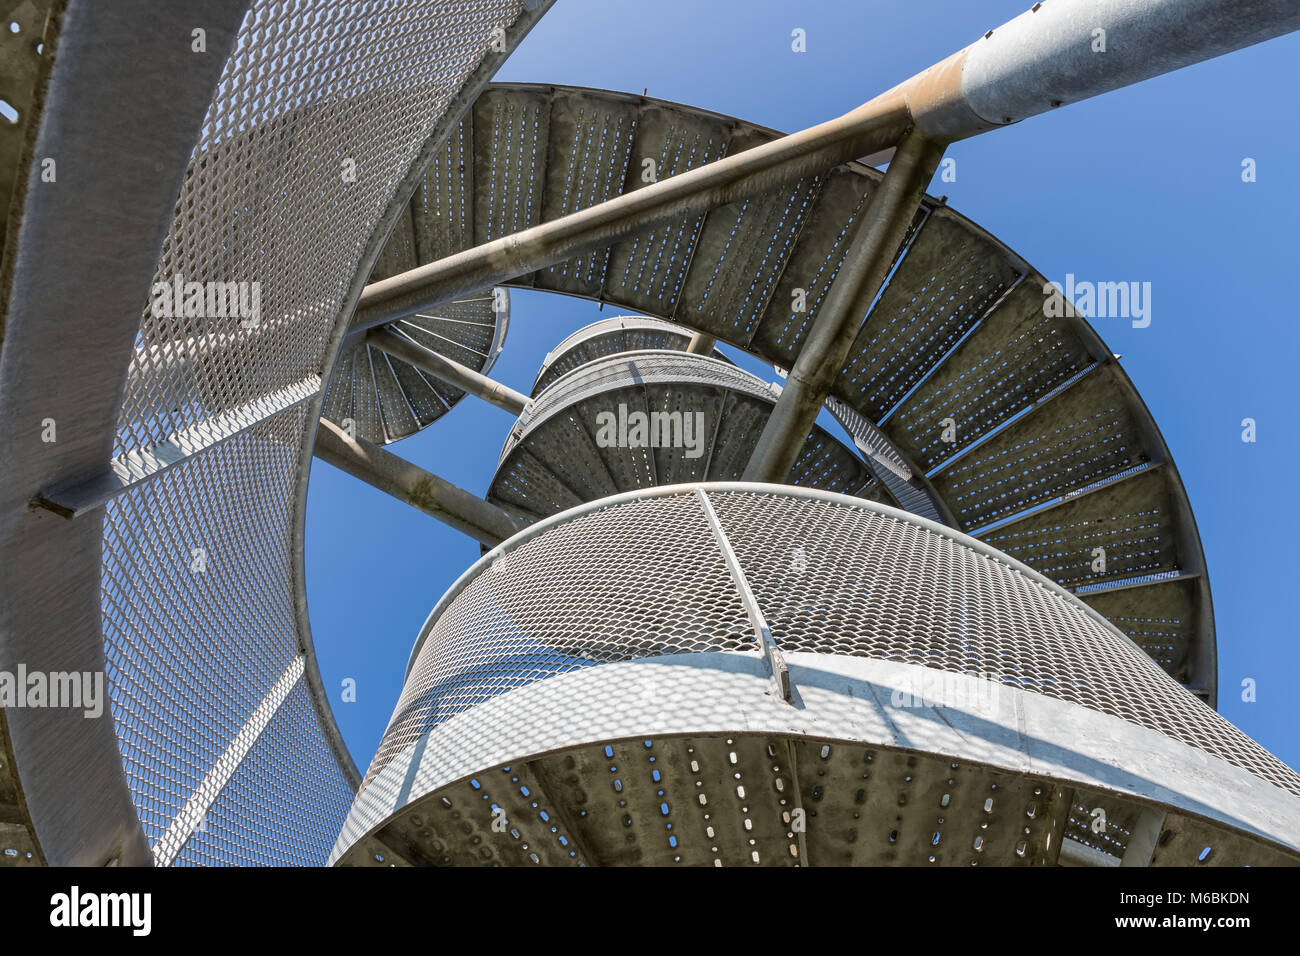 Tour faite d'escaliers en spirale près de l'aéroport de Lelystad, Pays-Bas Banque D'Images